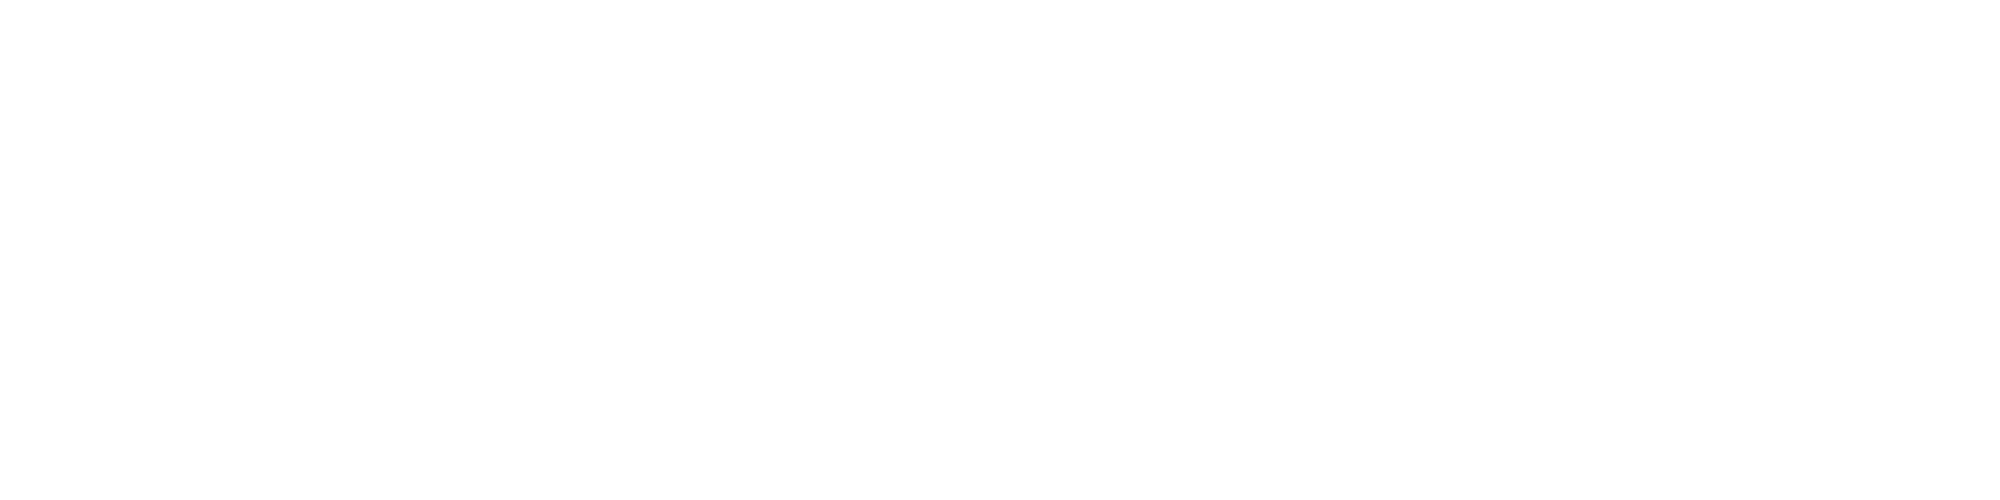 bnr_contact_top